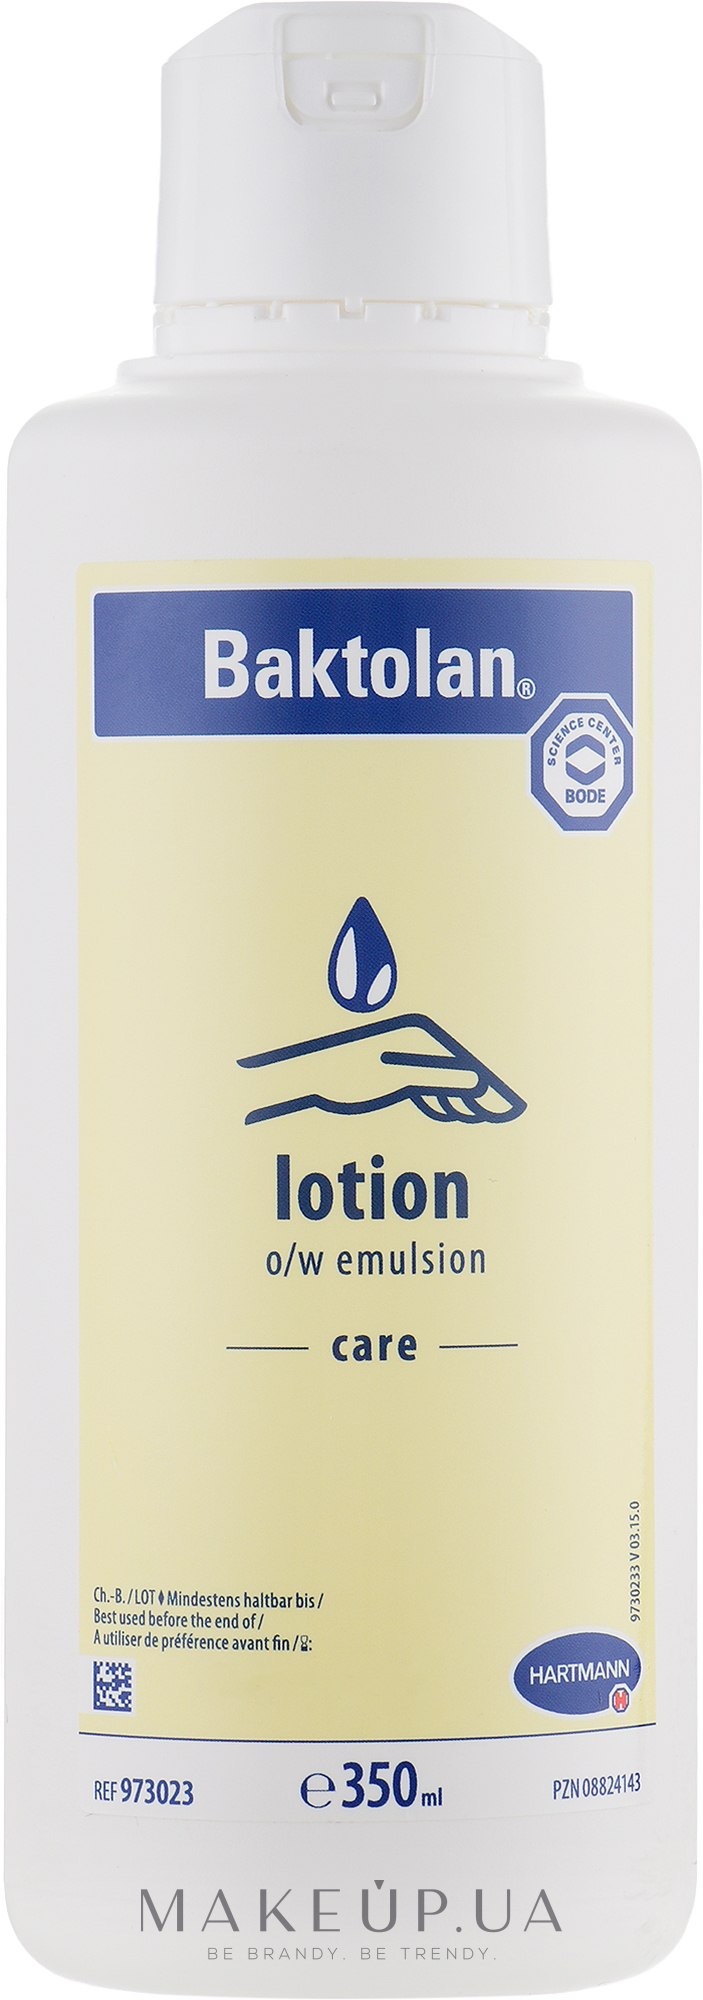 Bode Baktolan Lotion - Профессиональный увлажняющий быстро